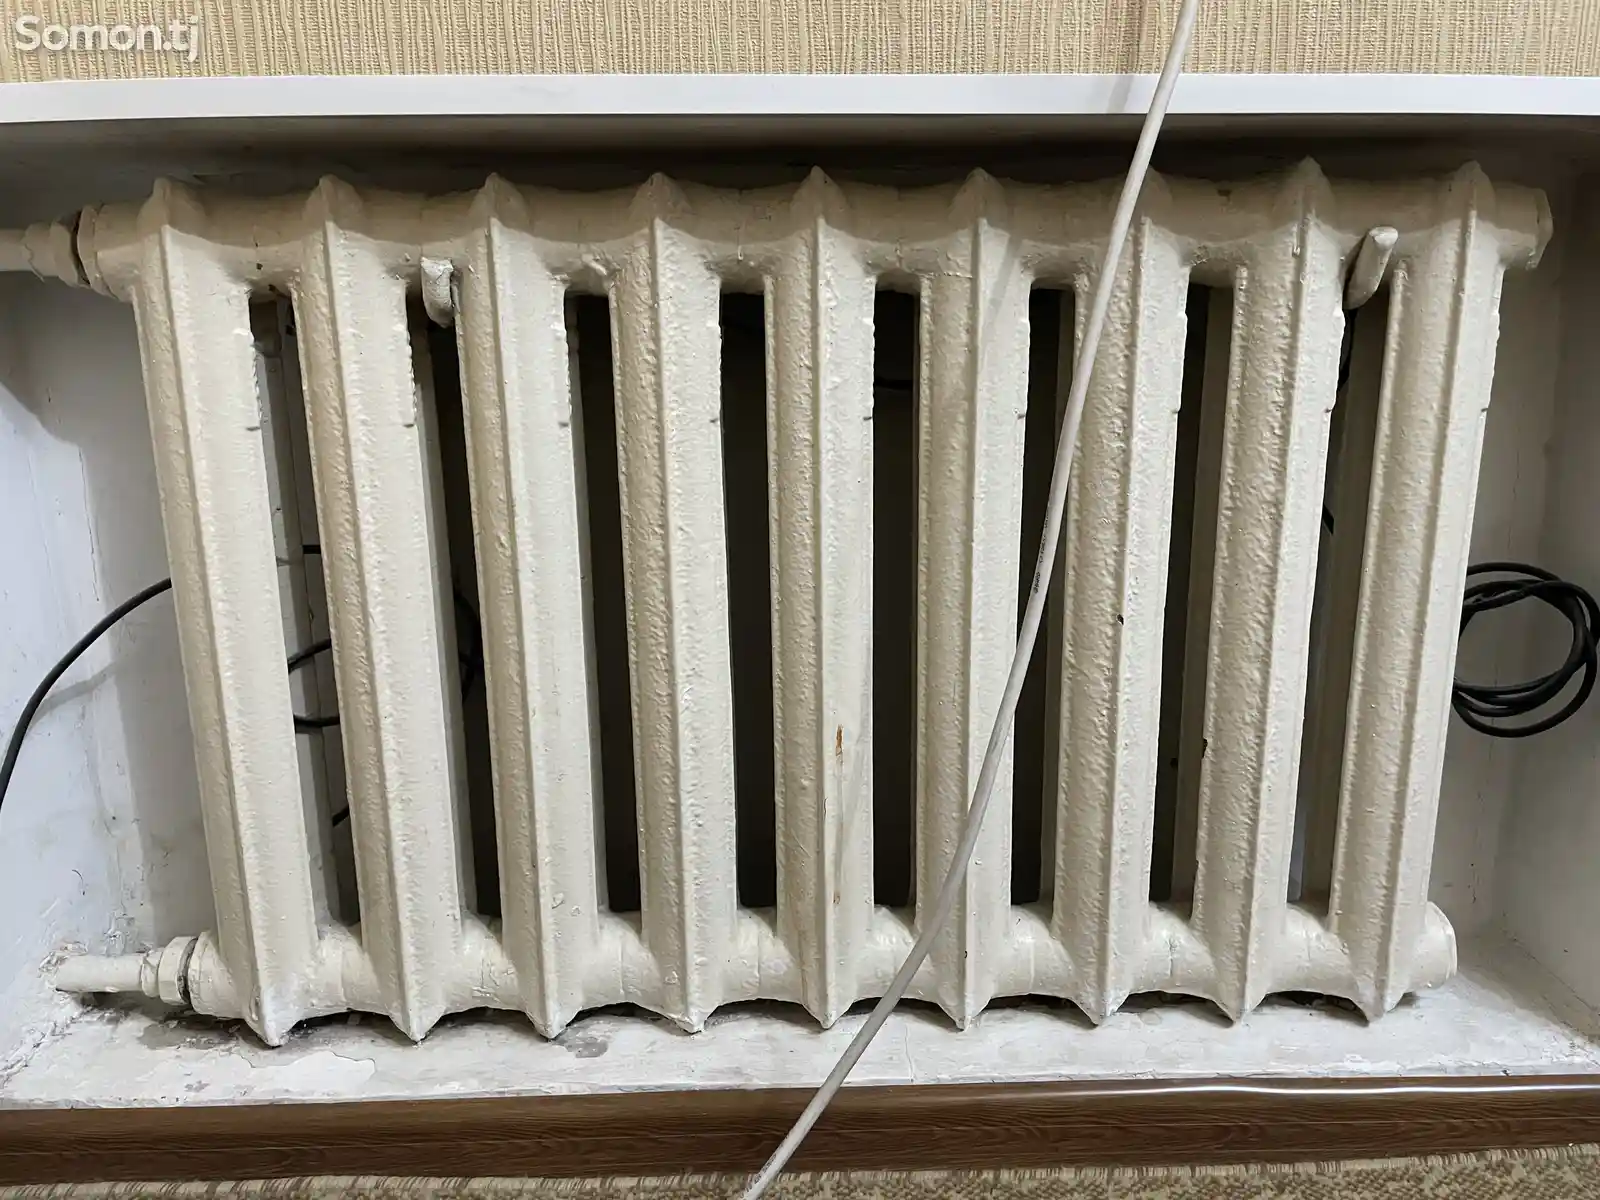 Радиатор отопления-1